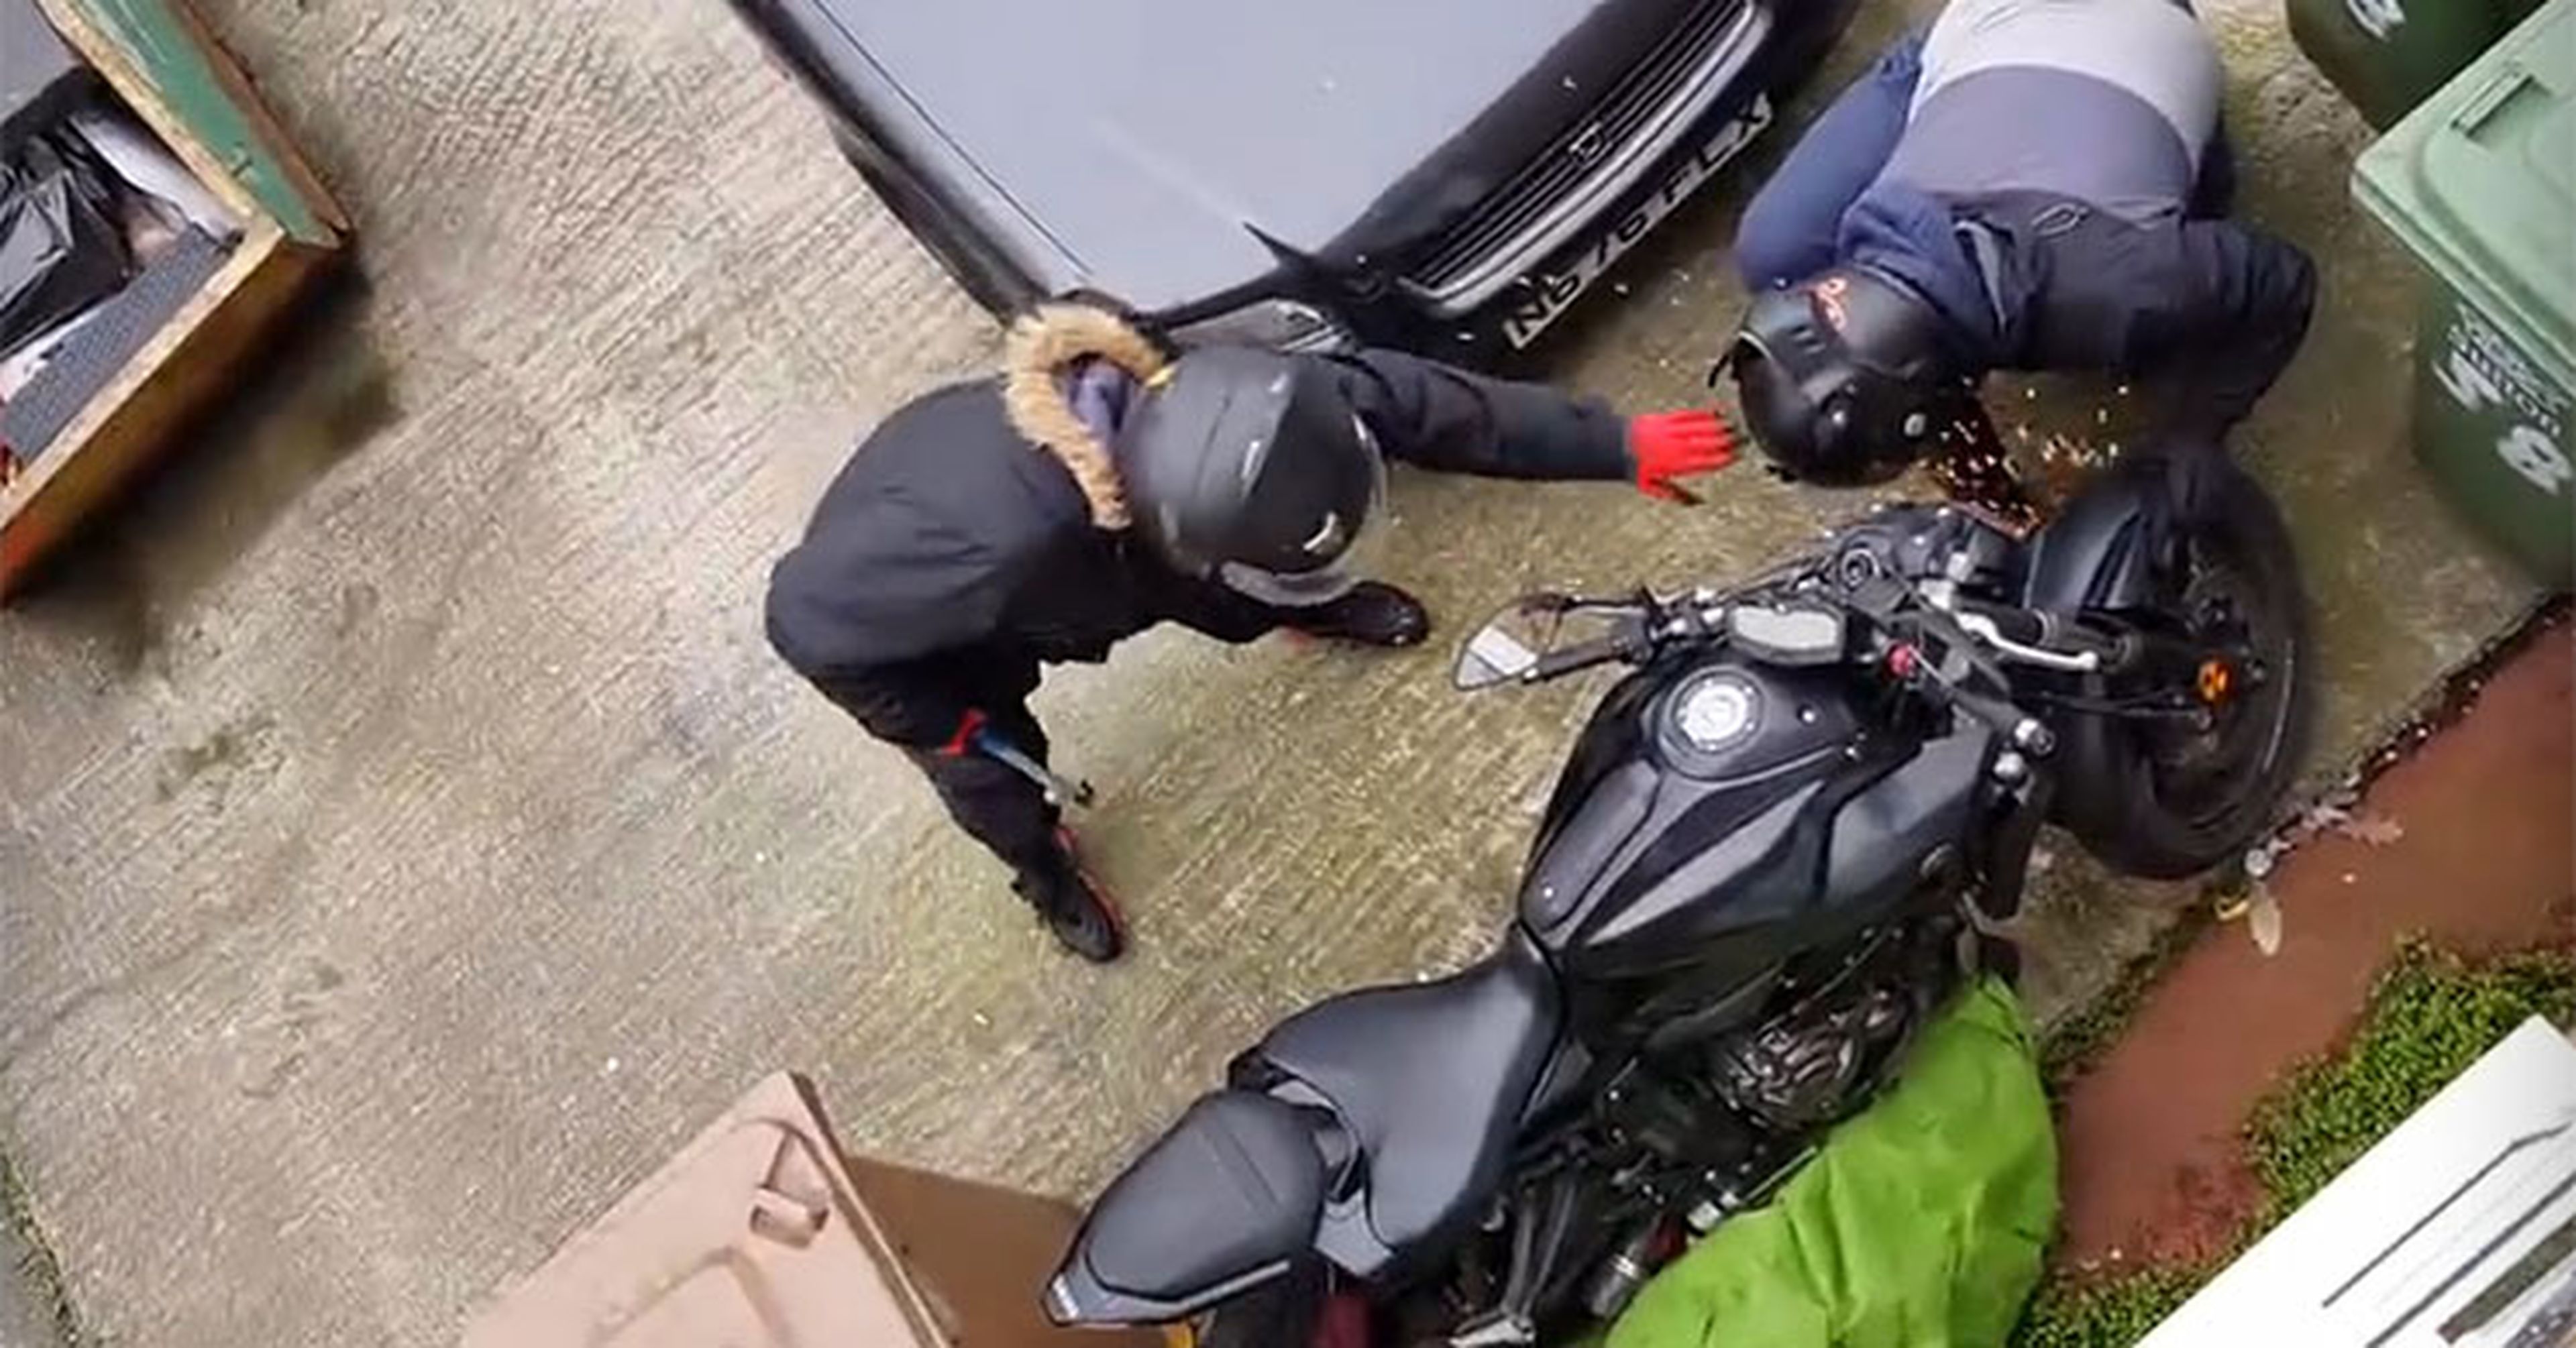 Intentan robar una moto en la cara de su dueño